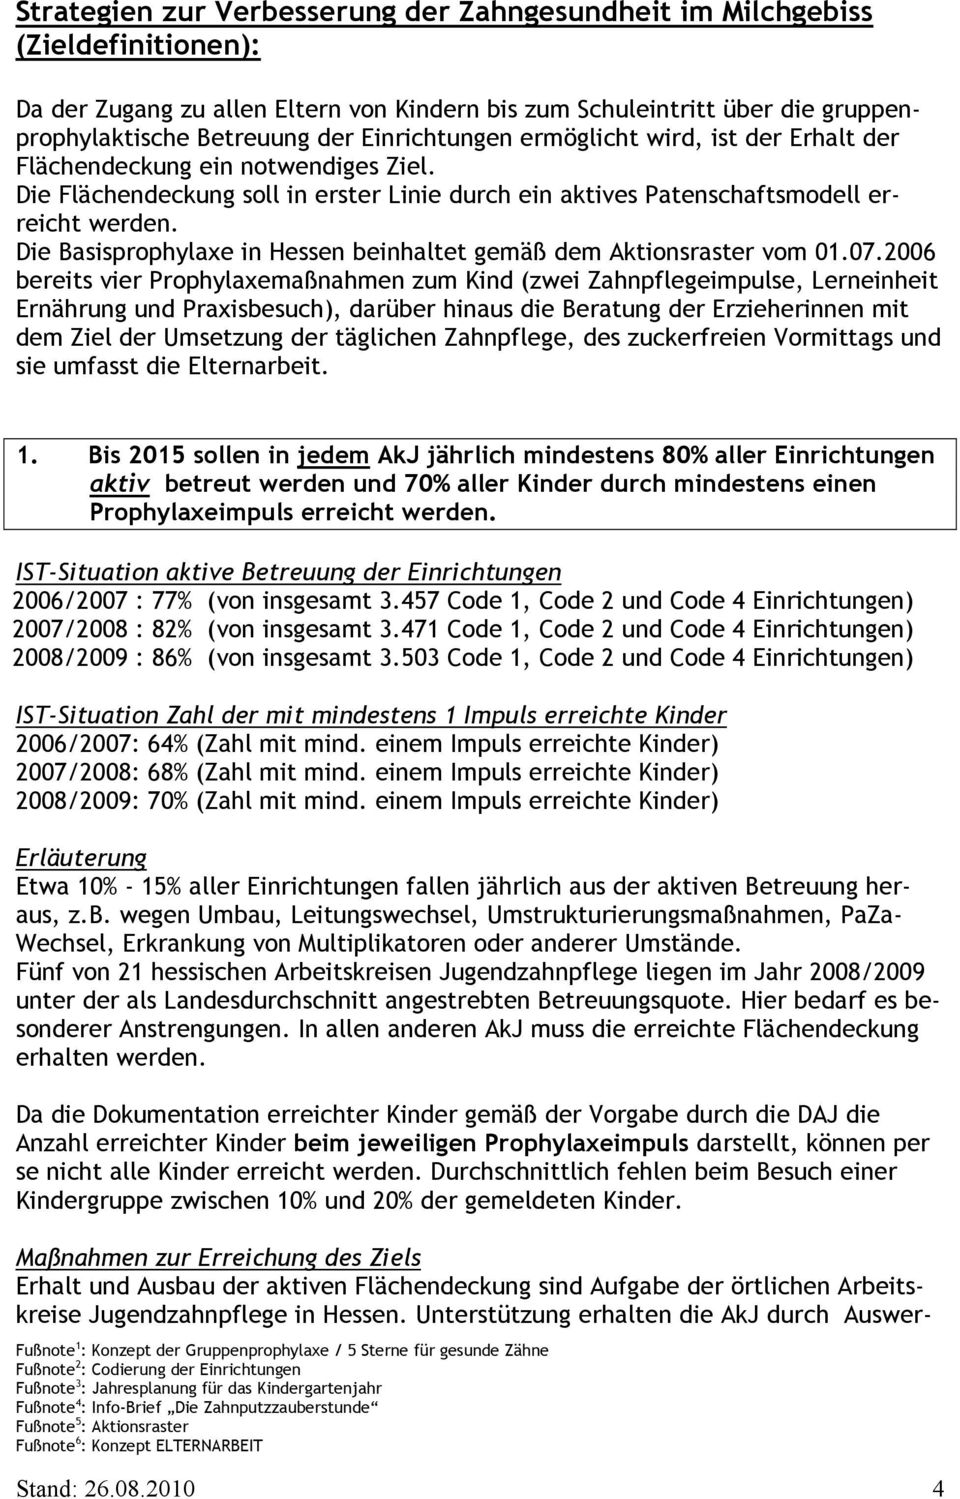 Die Basisprophylaxe in Hessen beinhaltet gemäß dem Aktionsraster vom 01.07.